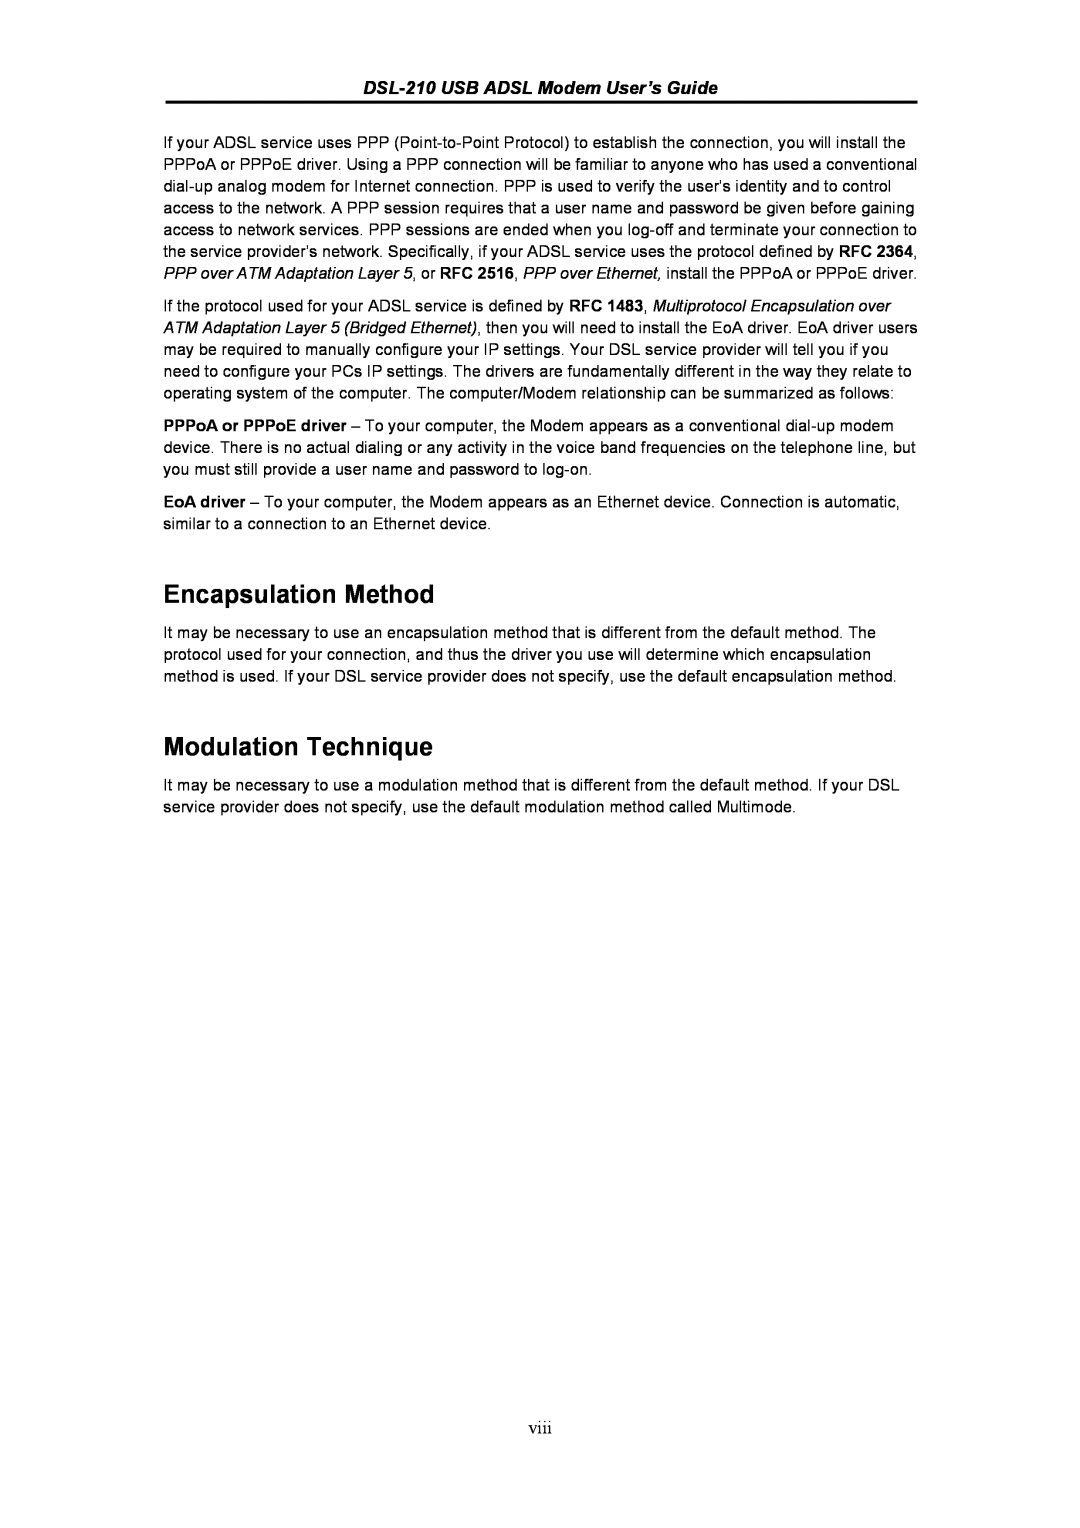 D-Link manual Encapsulation Method, Modulation Technique, DSL-210 USB ADSL Modem User’s Guide, viii 